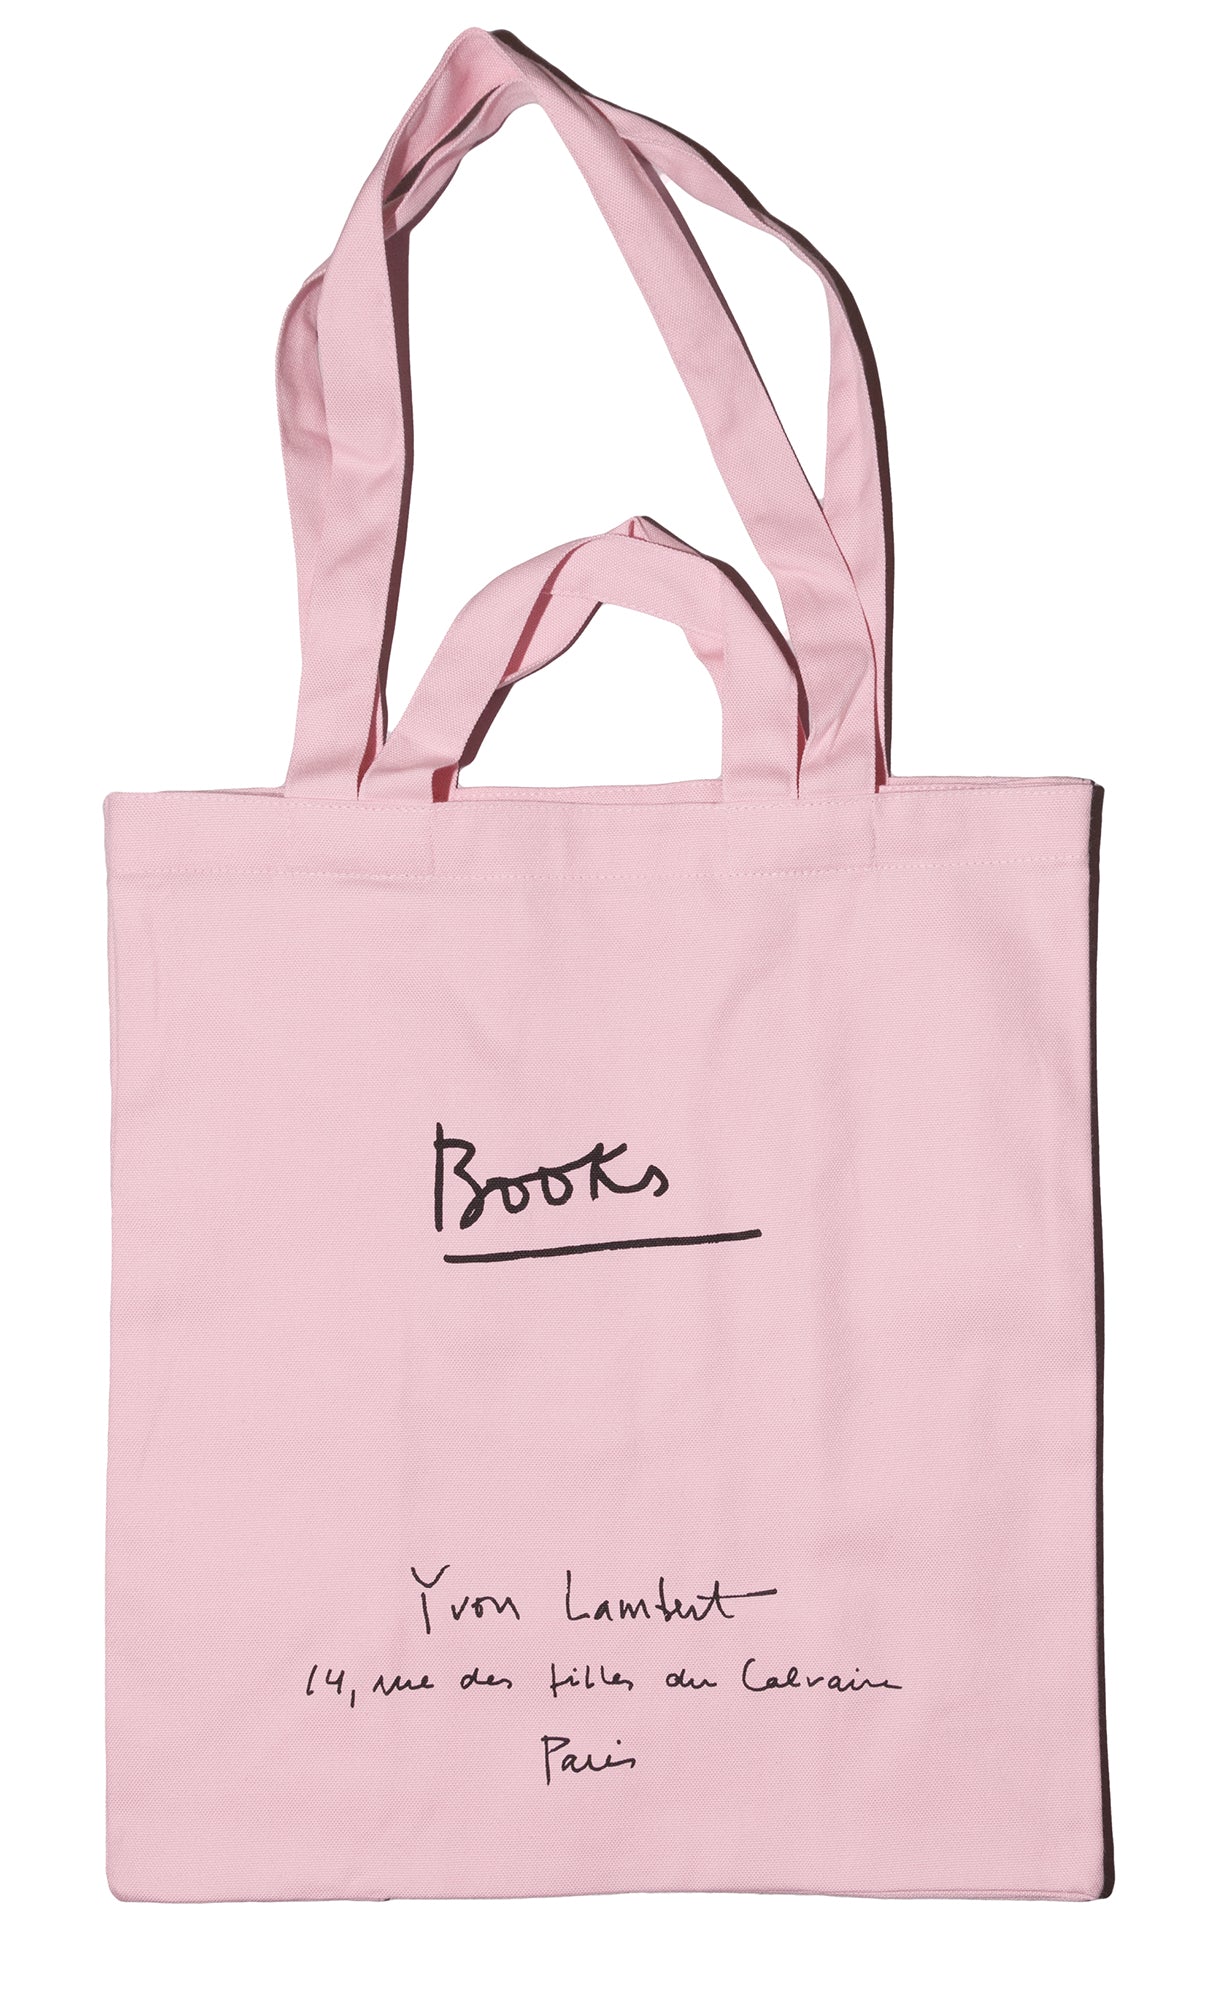 Yvon Lambert Tote Bag - Large Pink